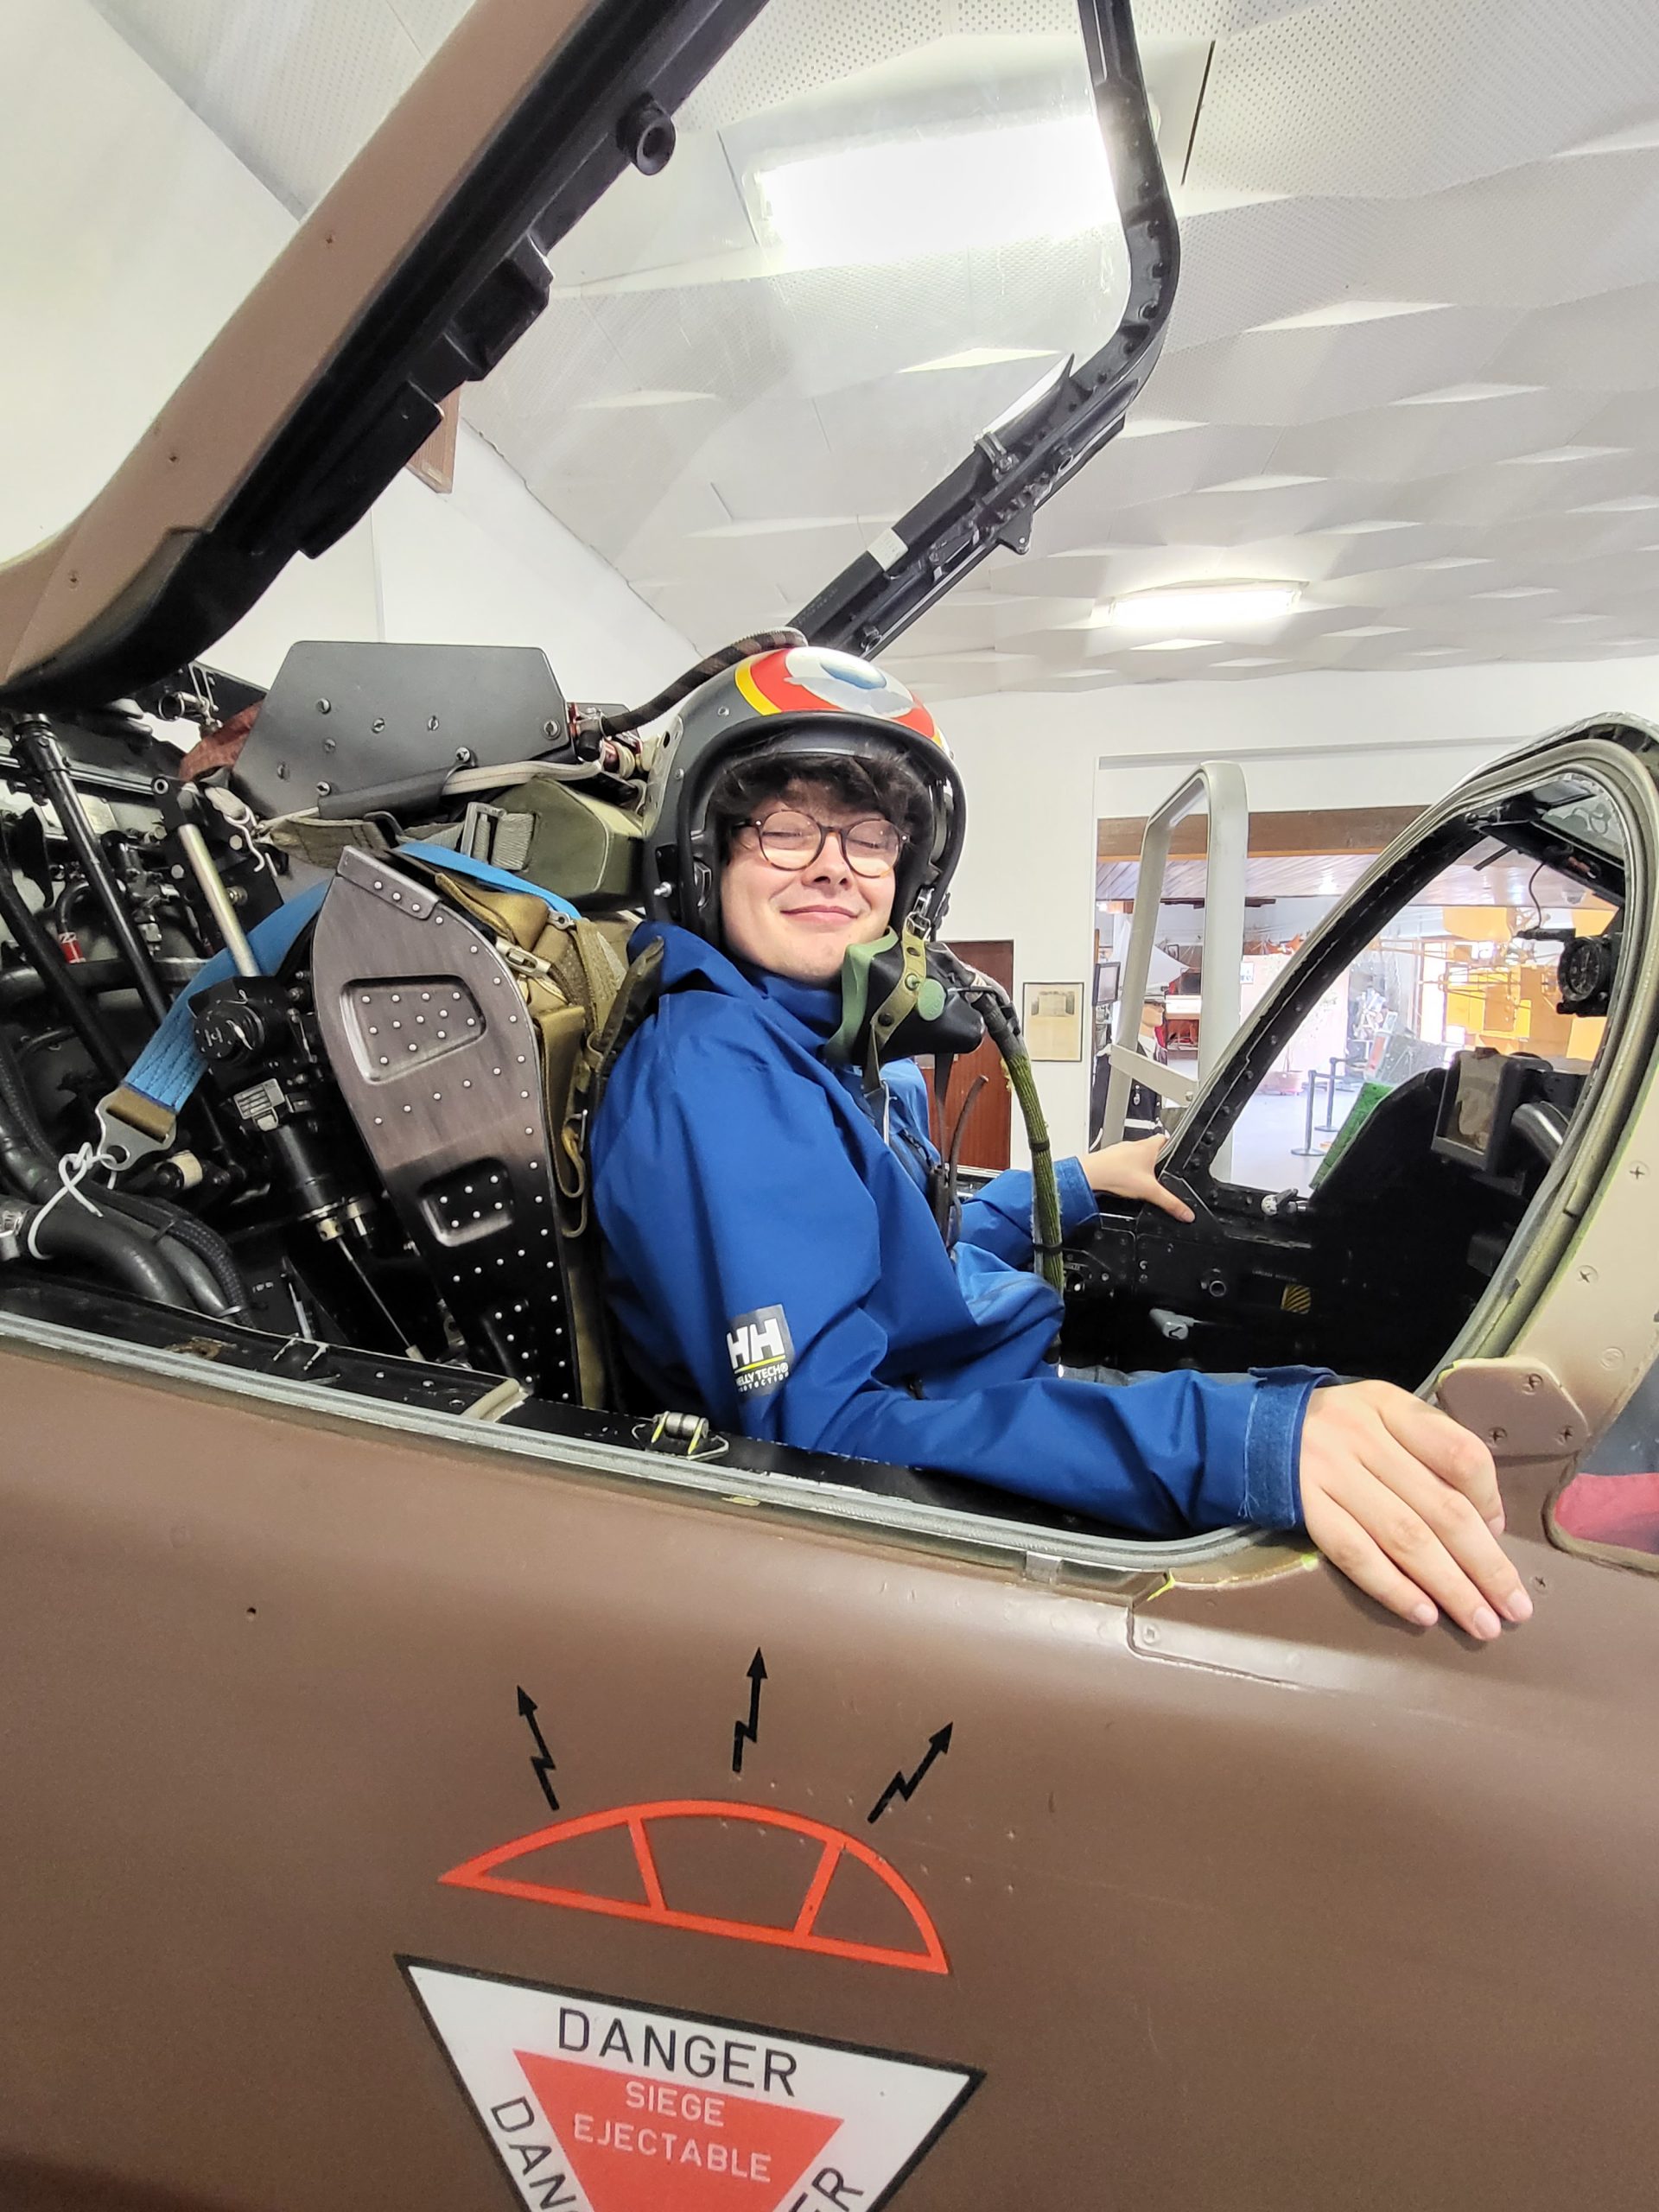 Portrait de notre adhérent Quentin dans le cockpit ouvert du Jaguar. Heureux, il porte tout l'équipement - casque, combinaison - comme en situation de vol. Sur le blanc de l'avion, un panneau indique "danger ! siège éjectable".